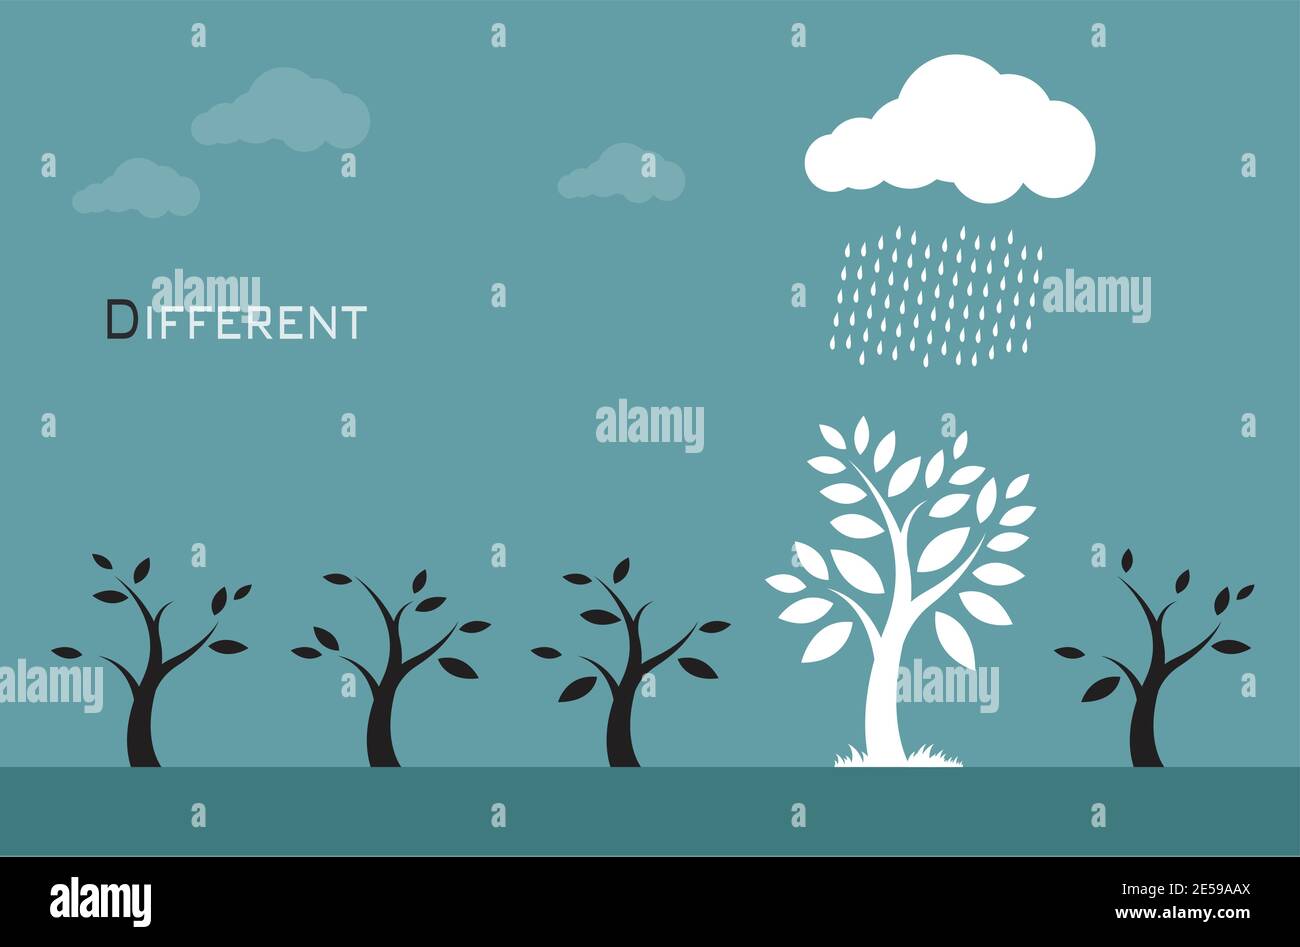 Images vectorielles d'arbres, de nuages et de pluie. Différents concepts Illustration de Vecteur